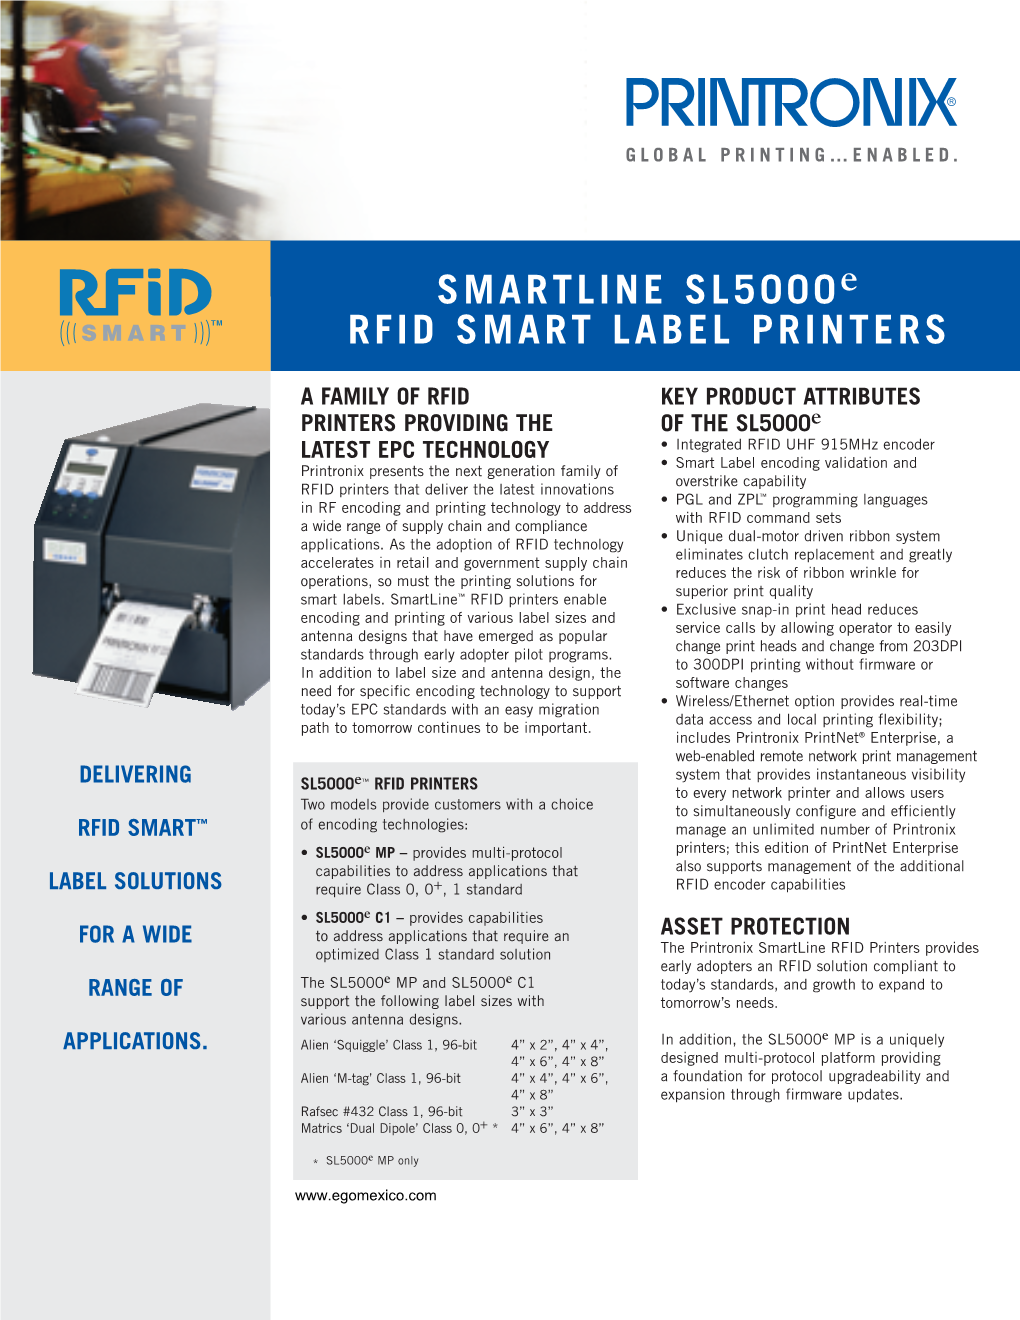 SMARTLINE Sl5000e RFID SMART LABEL PRINTERS